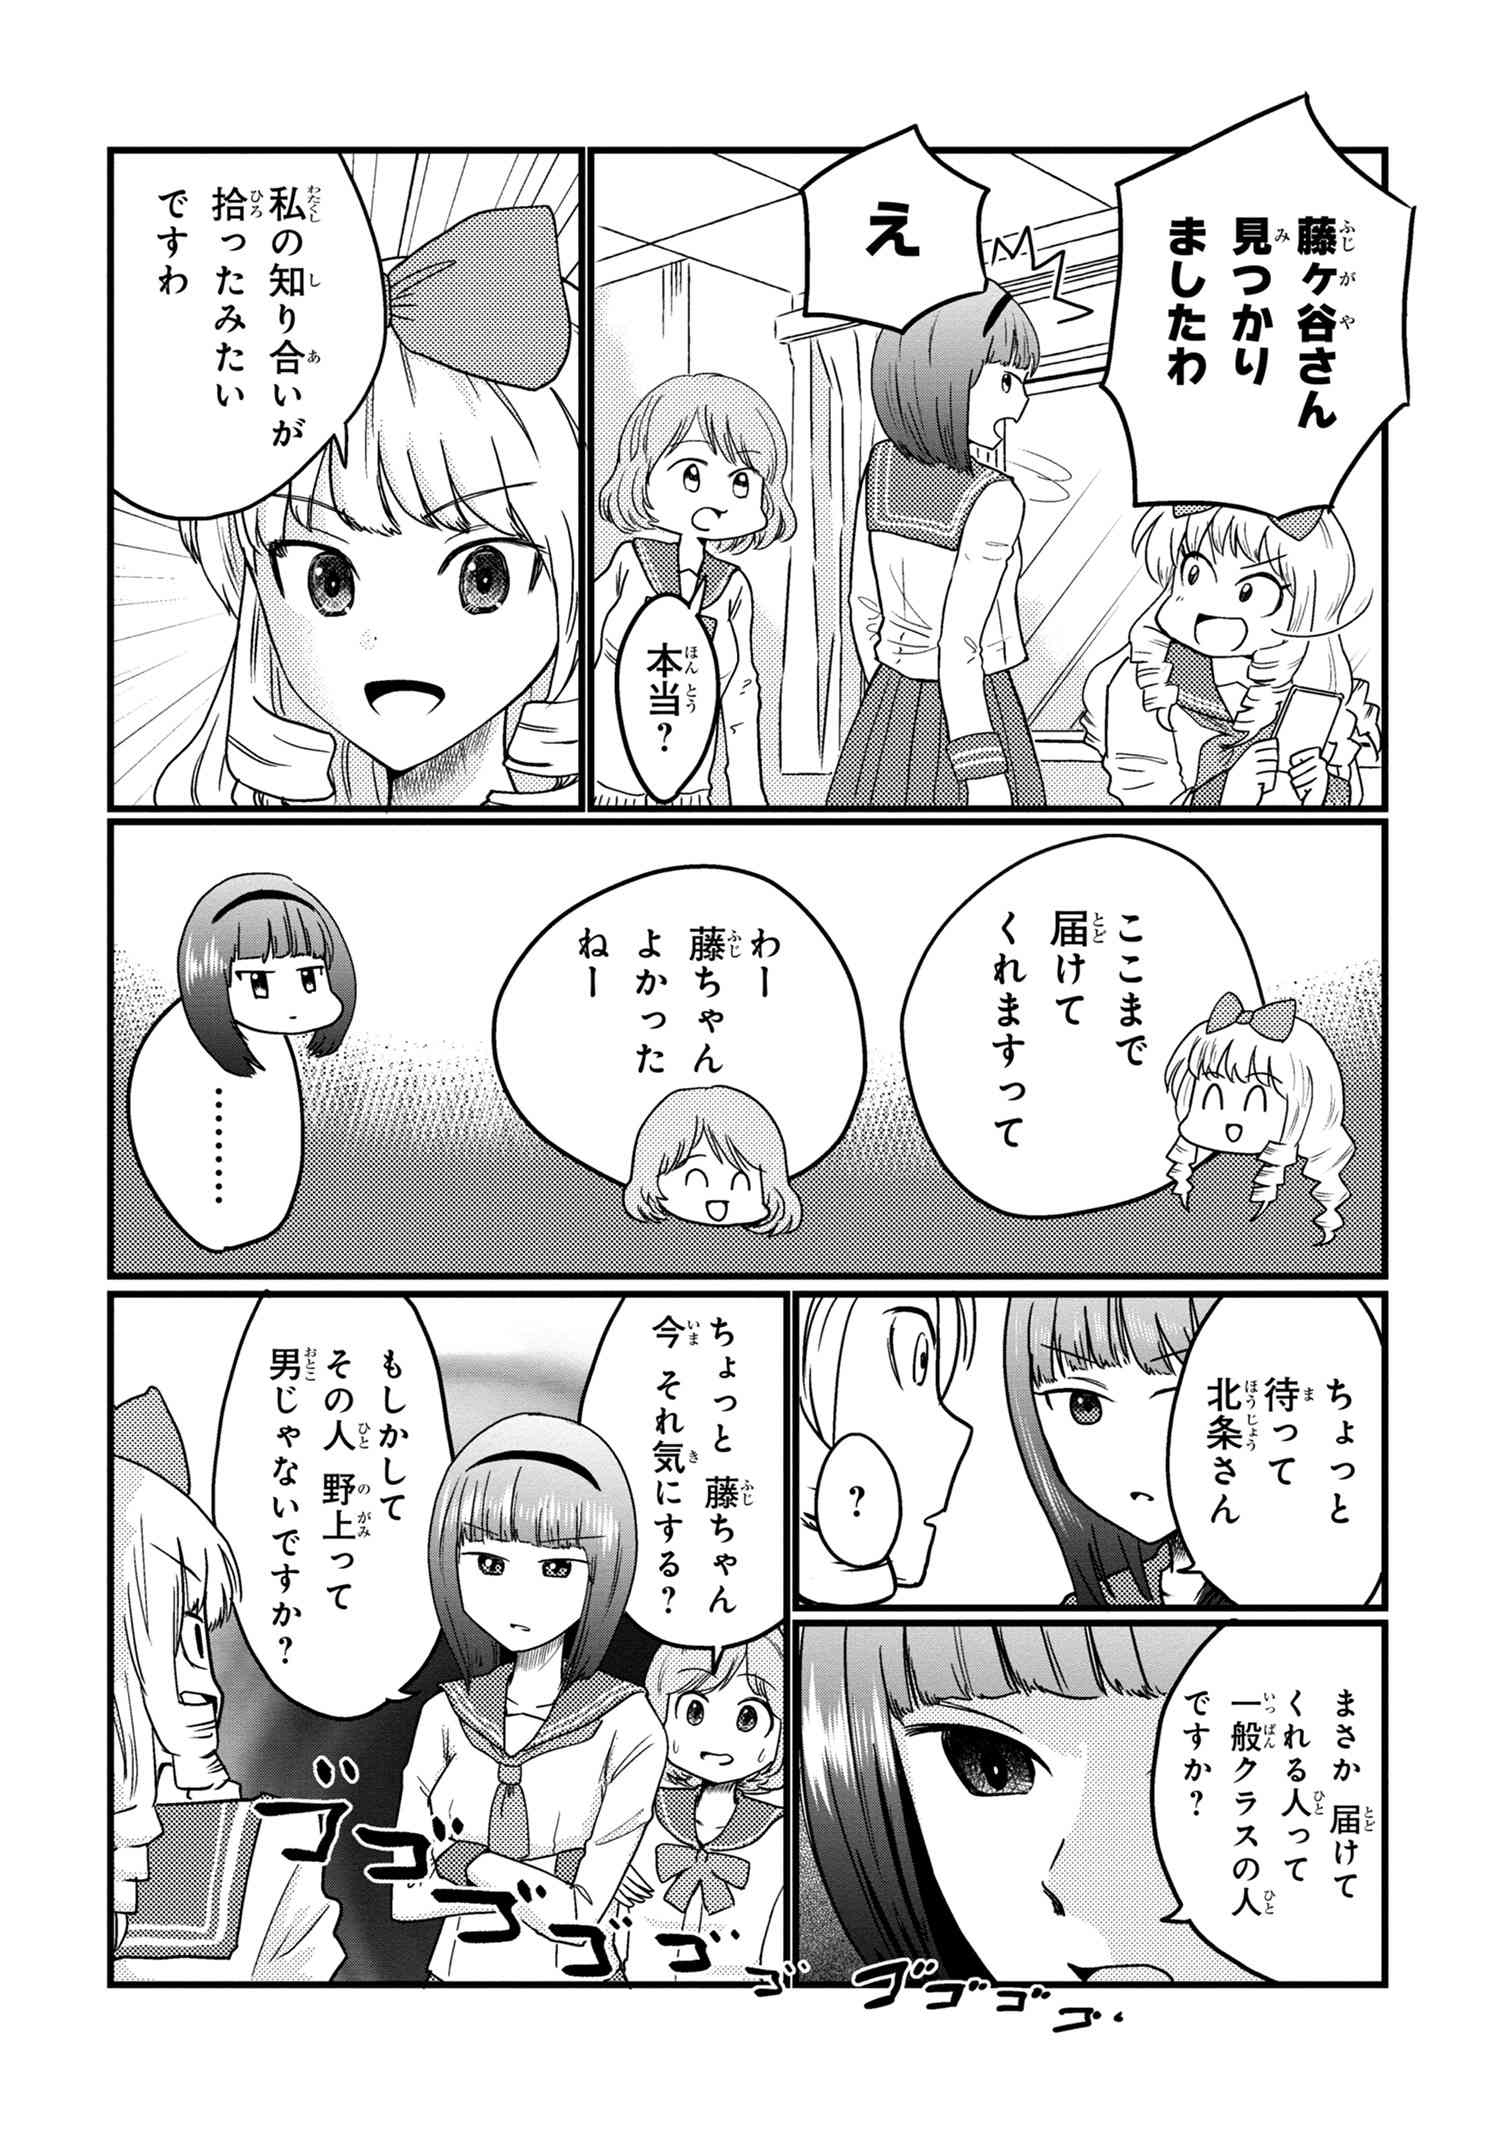 Houjou Urara no renai shousetsu o kaki nasai! - Chapter 11 - Page 2